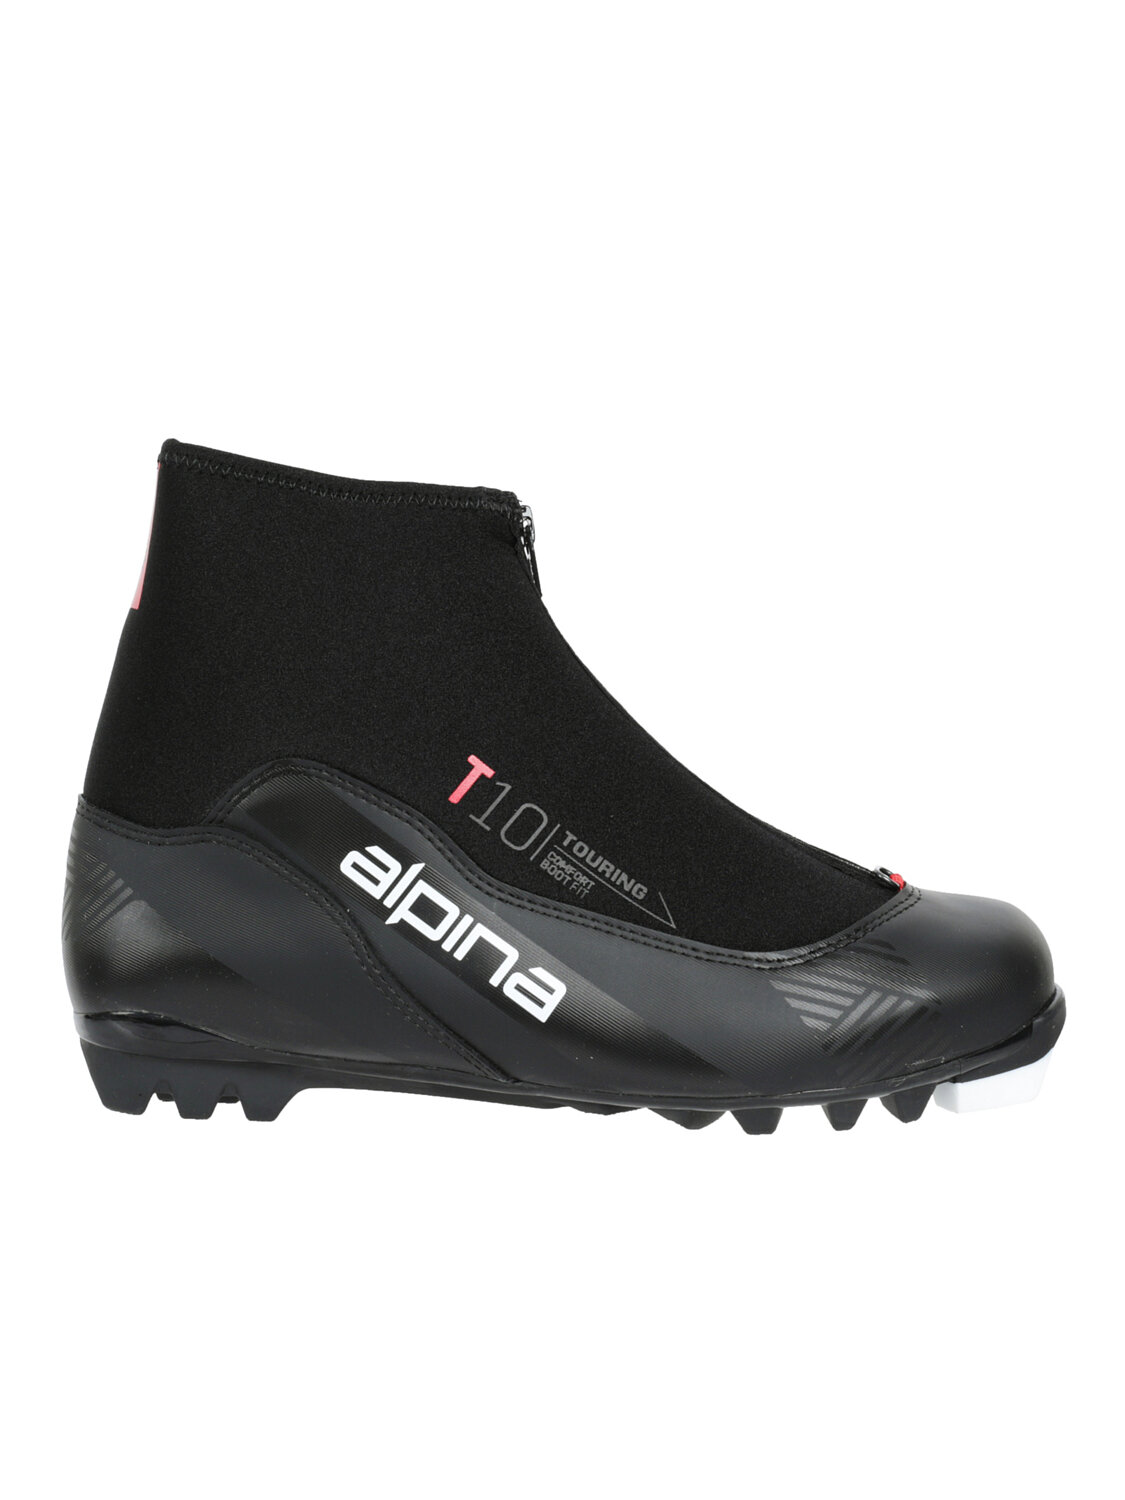 Лыжные ботинки Alpina. 2022-23 T 10 BLACK/RED (EUR:45)